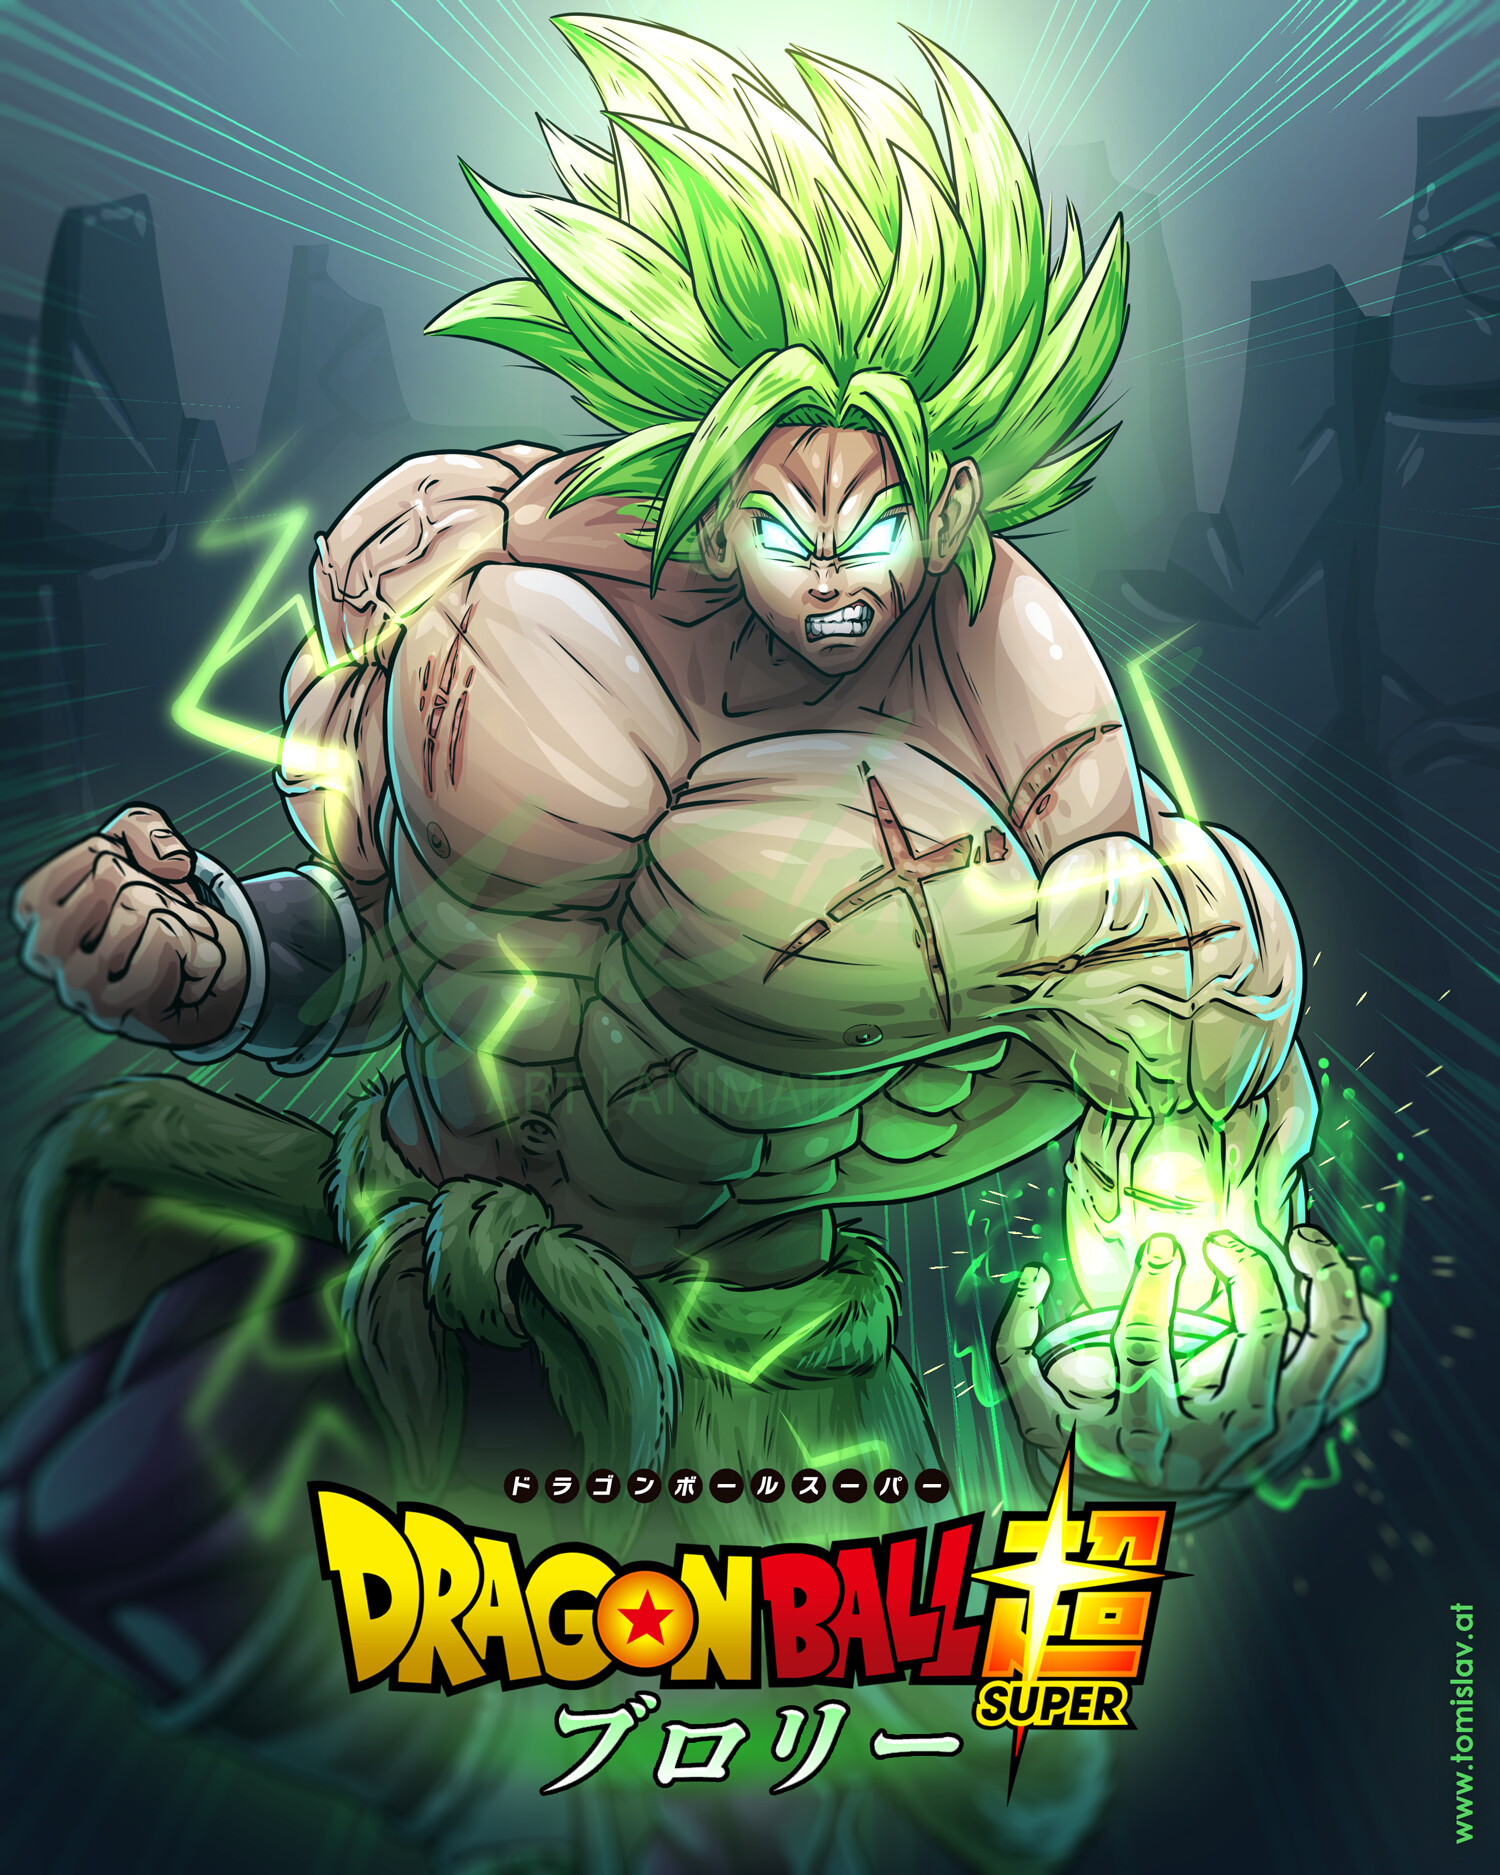 Poster com os personagens de Dragon Ball Super: Broly